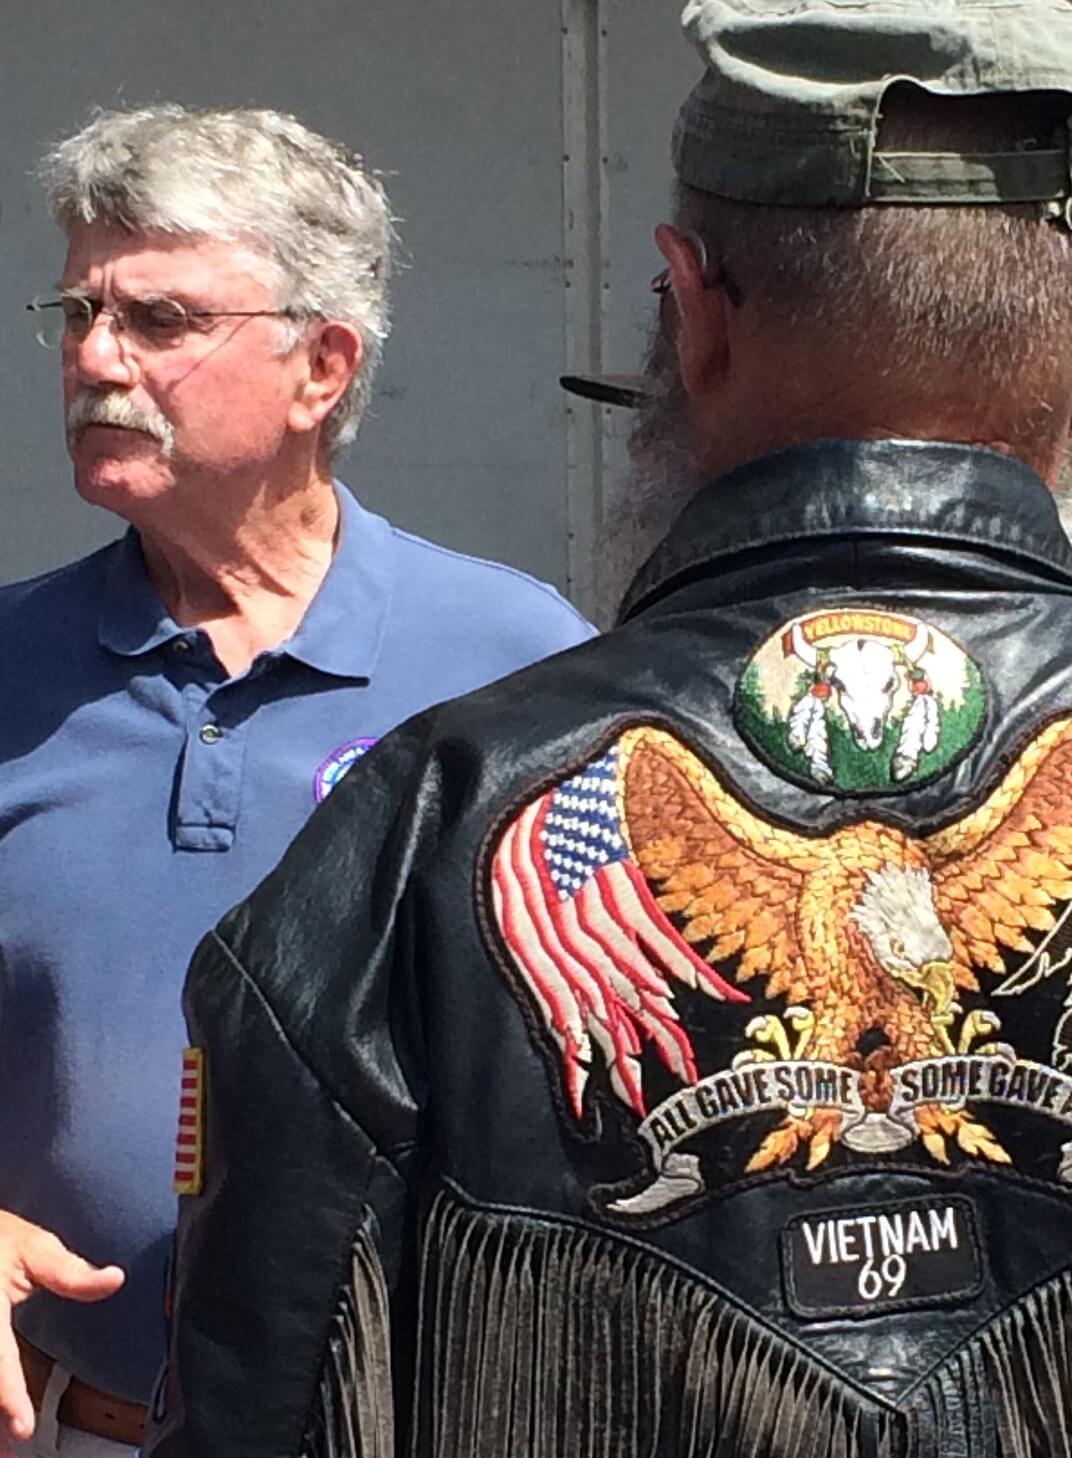 Man in a fringed Vietnam veteran jacket.